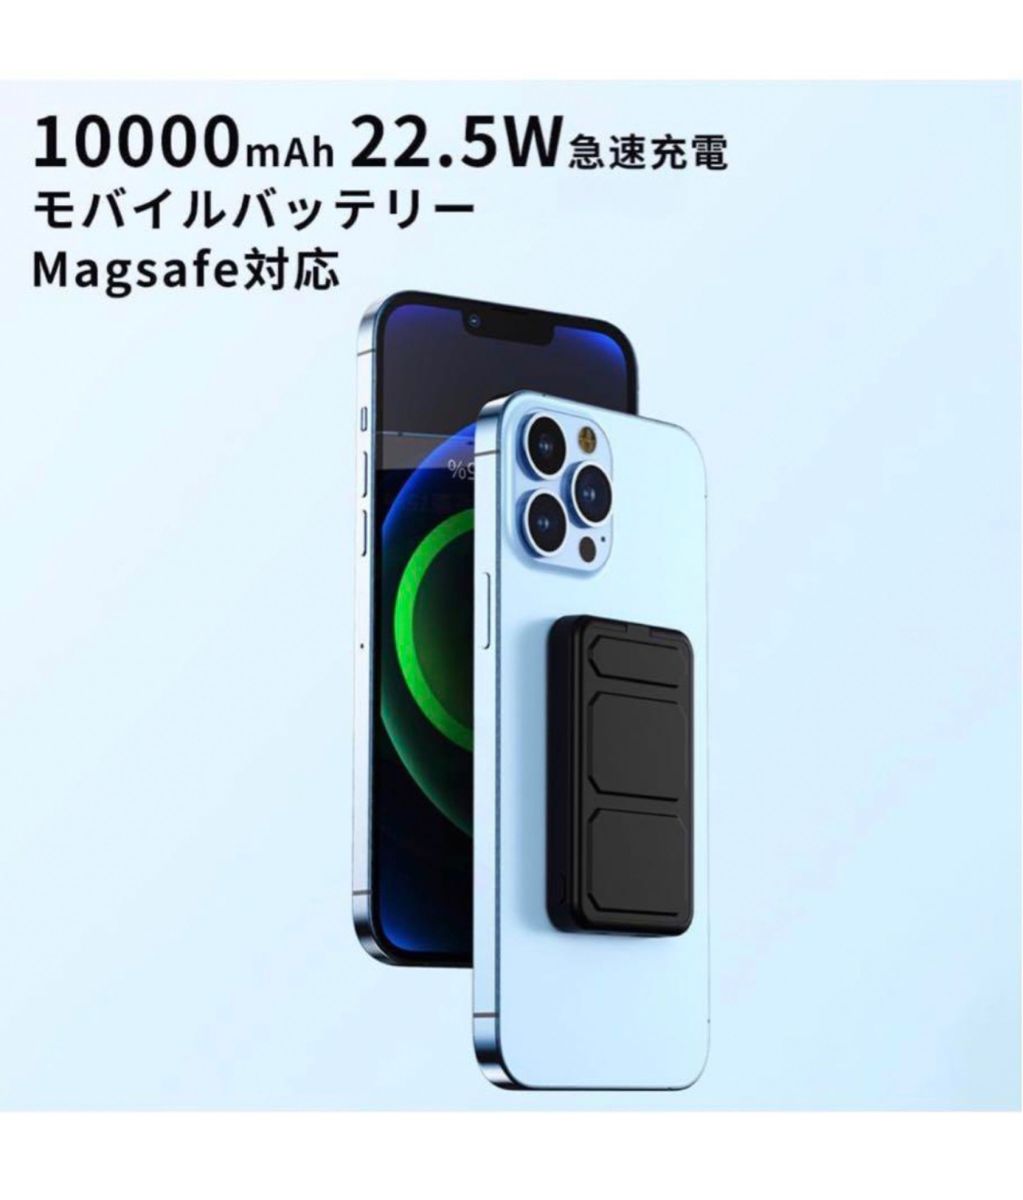 MagSafeモバイルバッテリー iphone 10000mAh 大容量 22.5W急速充電 ワイヤレス マグネット式　ピンク